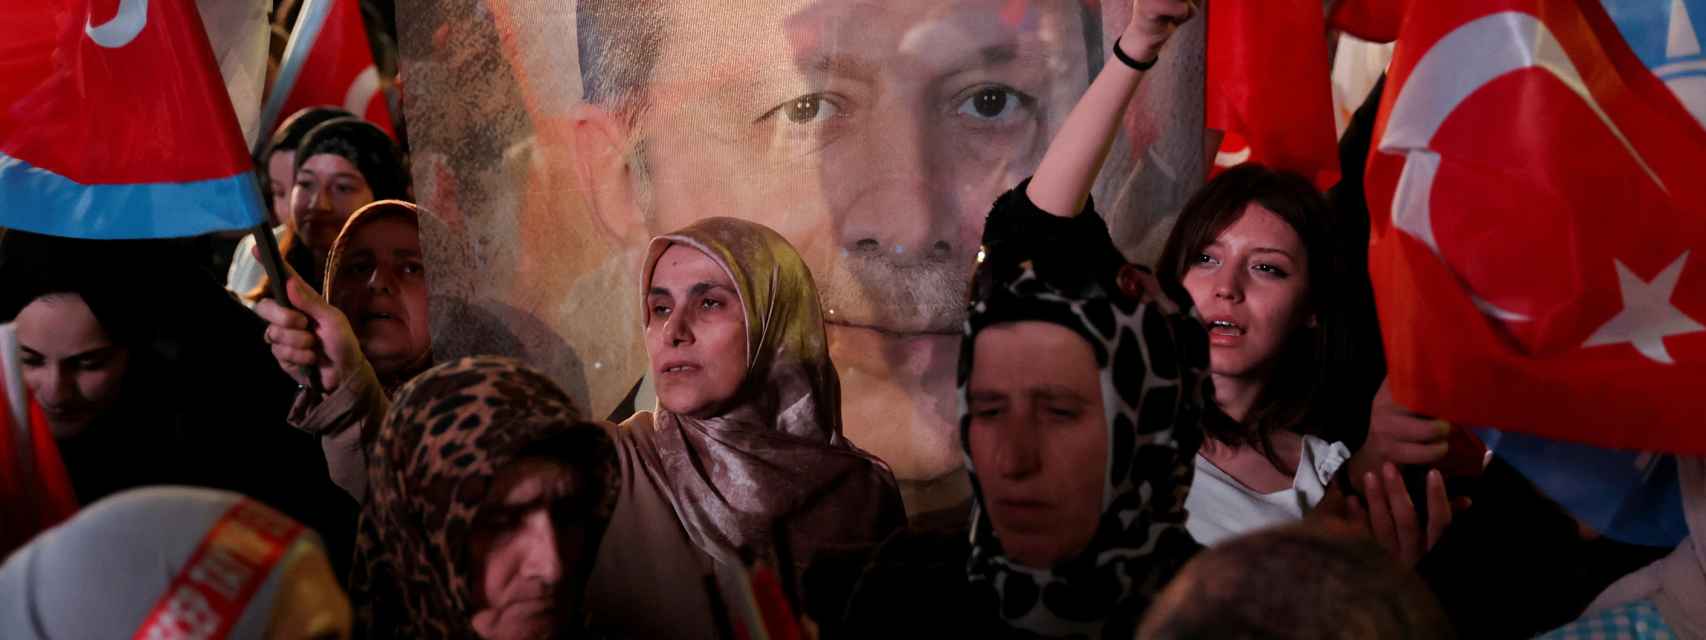 Los partidarios del presidente turco Recep Tayyip Erdogan y del Partido AK (AKP) ondean banderas en la sede del Partido AK en Ankara, Turquía.